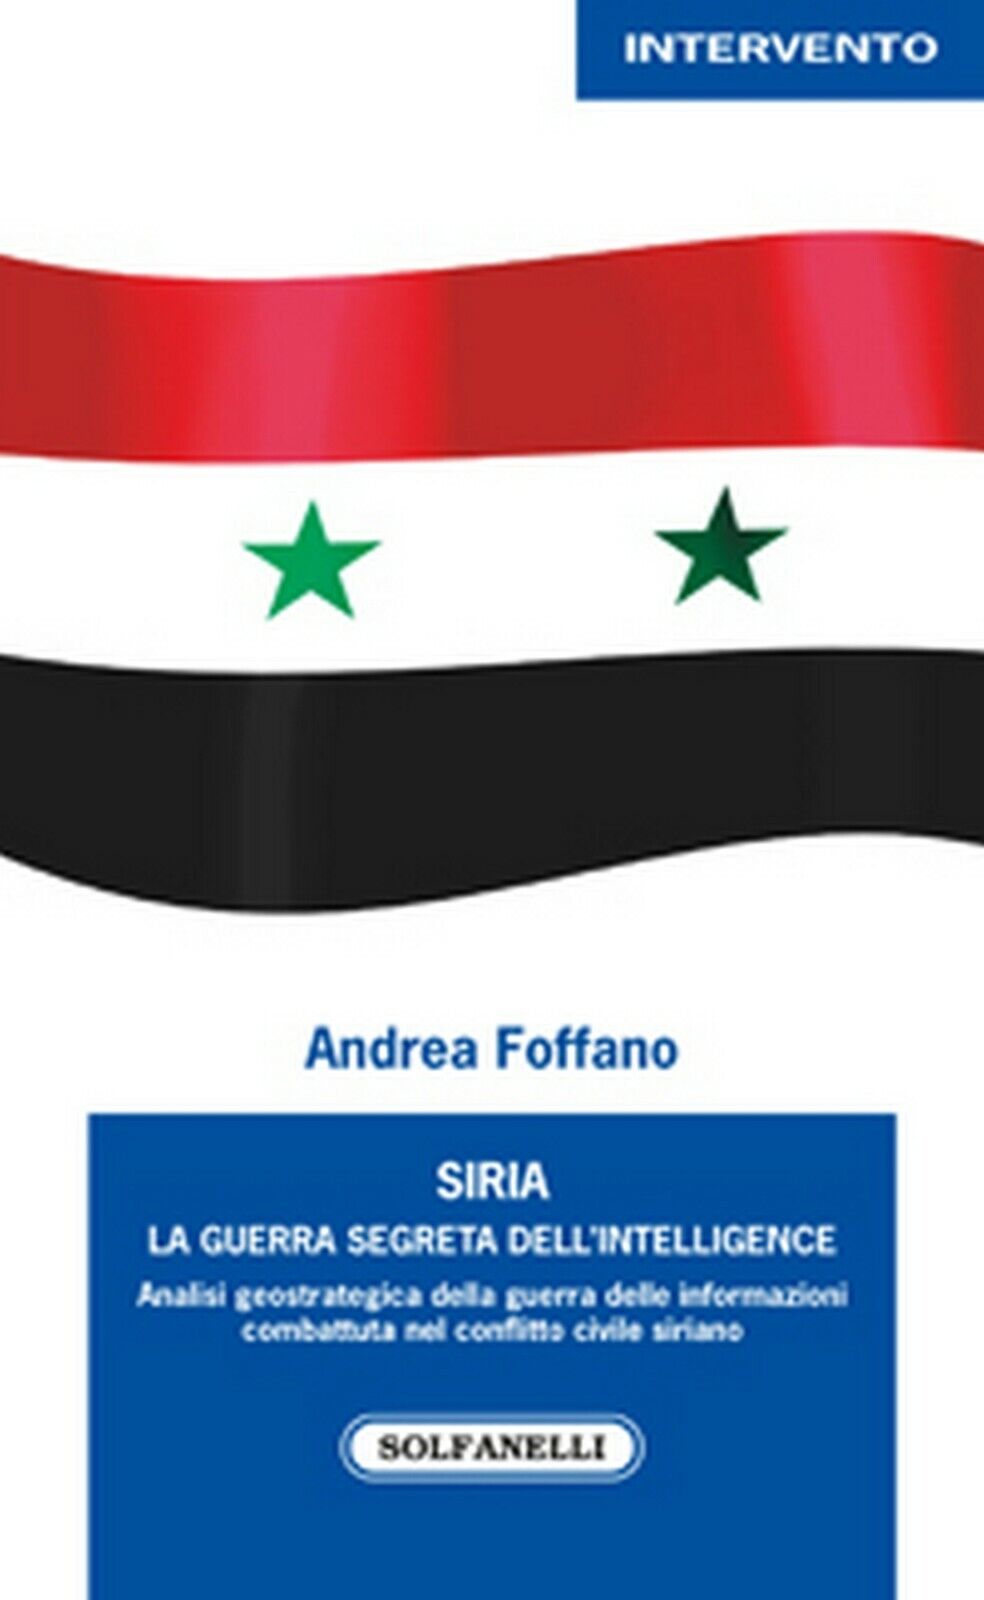 SIRIA. La guerra segreta delL'intelligence  di Andrea Foffano,  Solfanelli Ed.